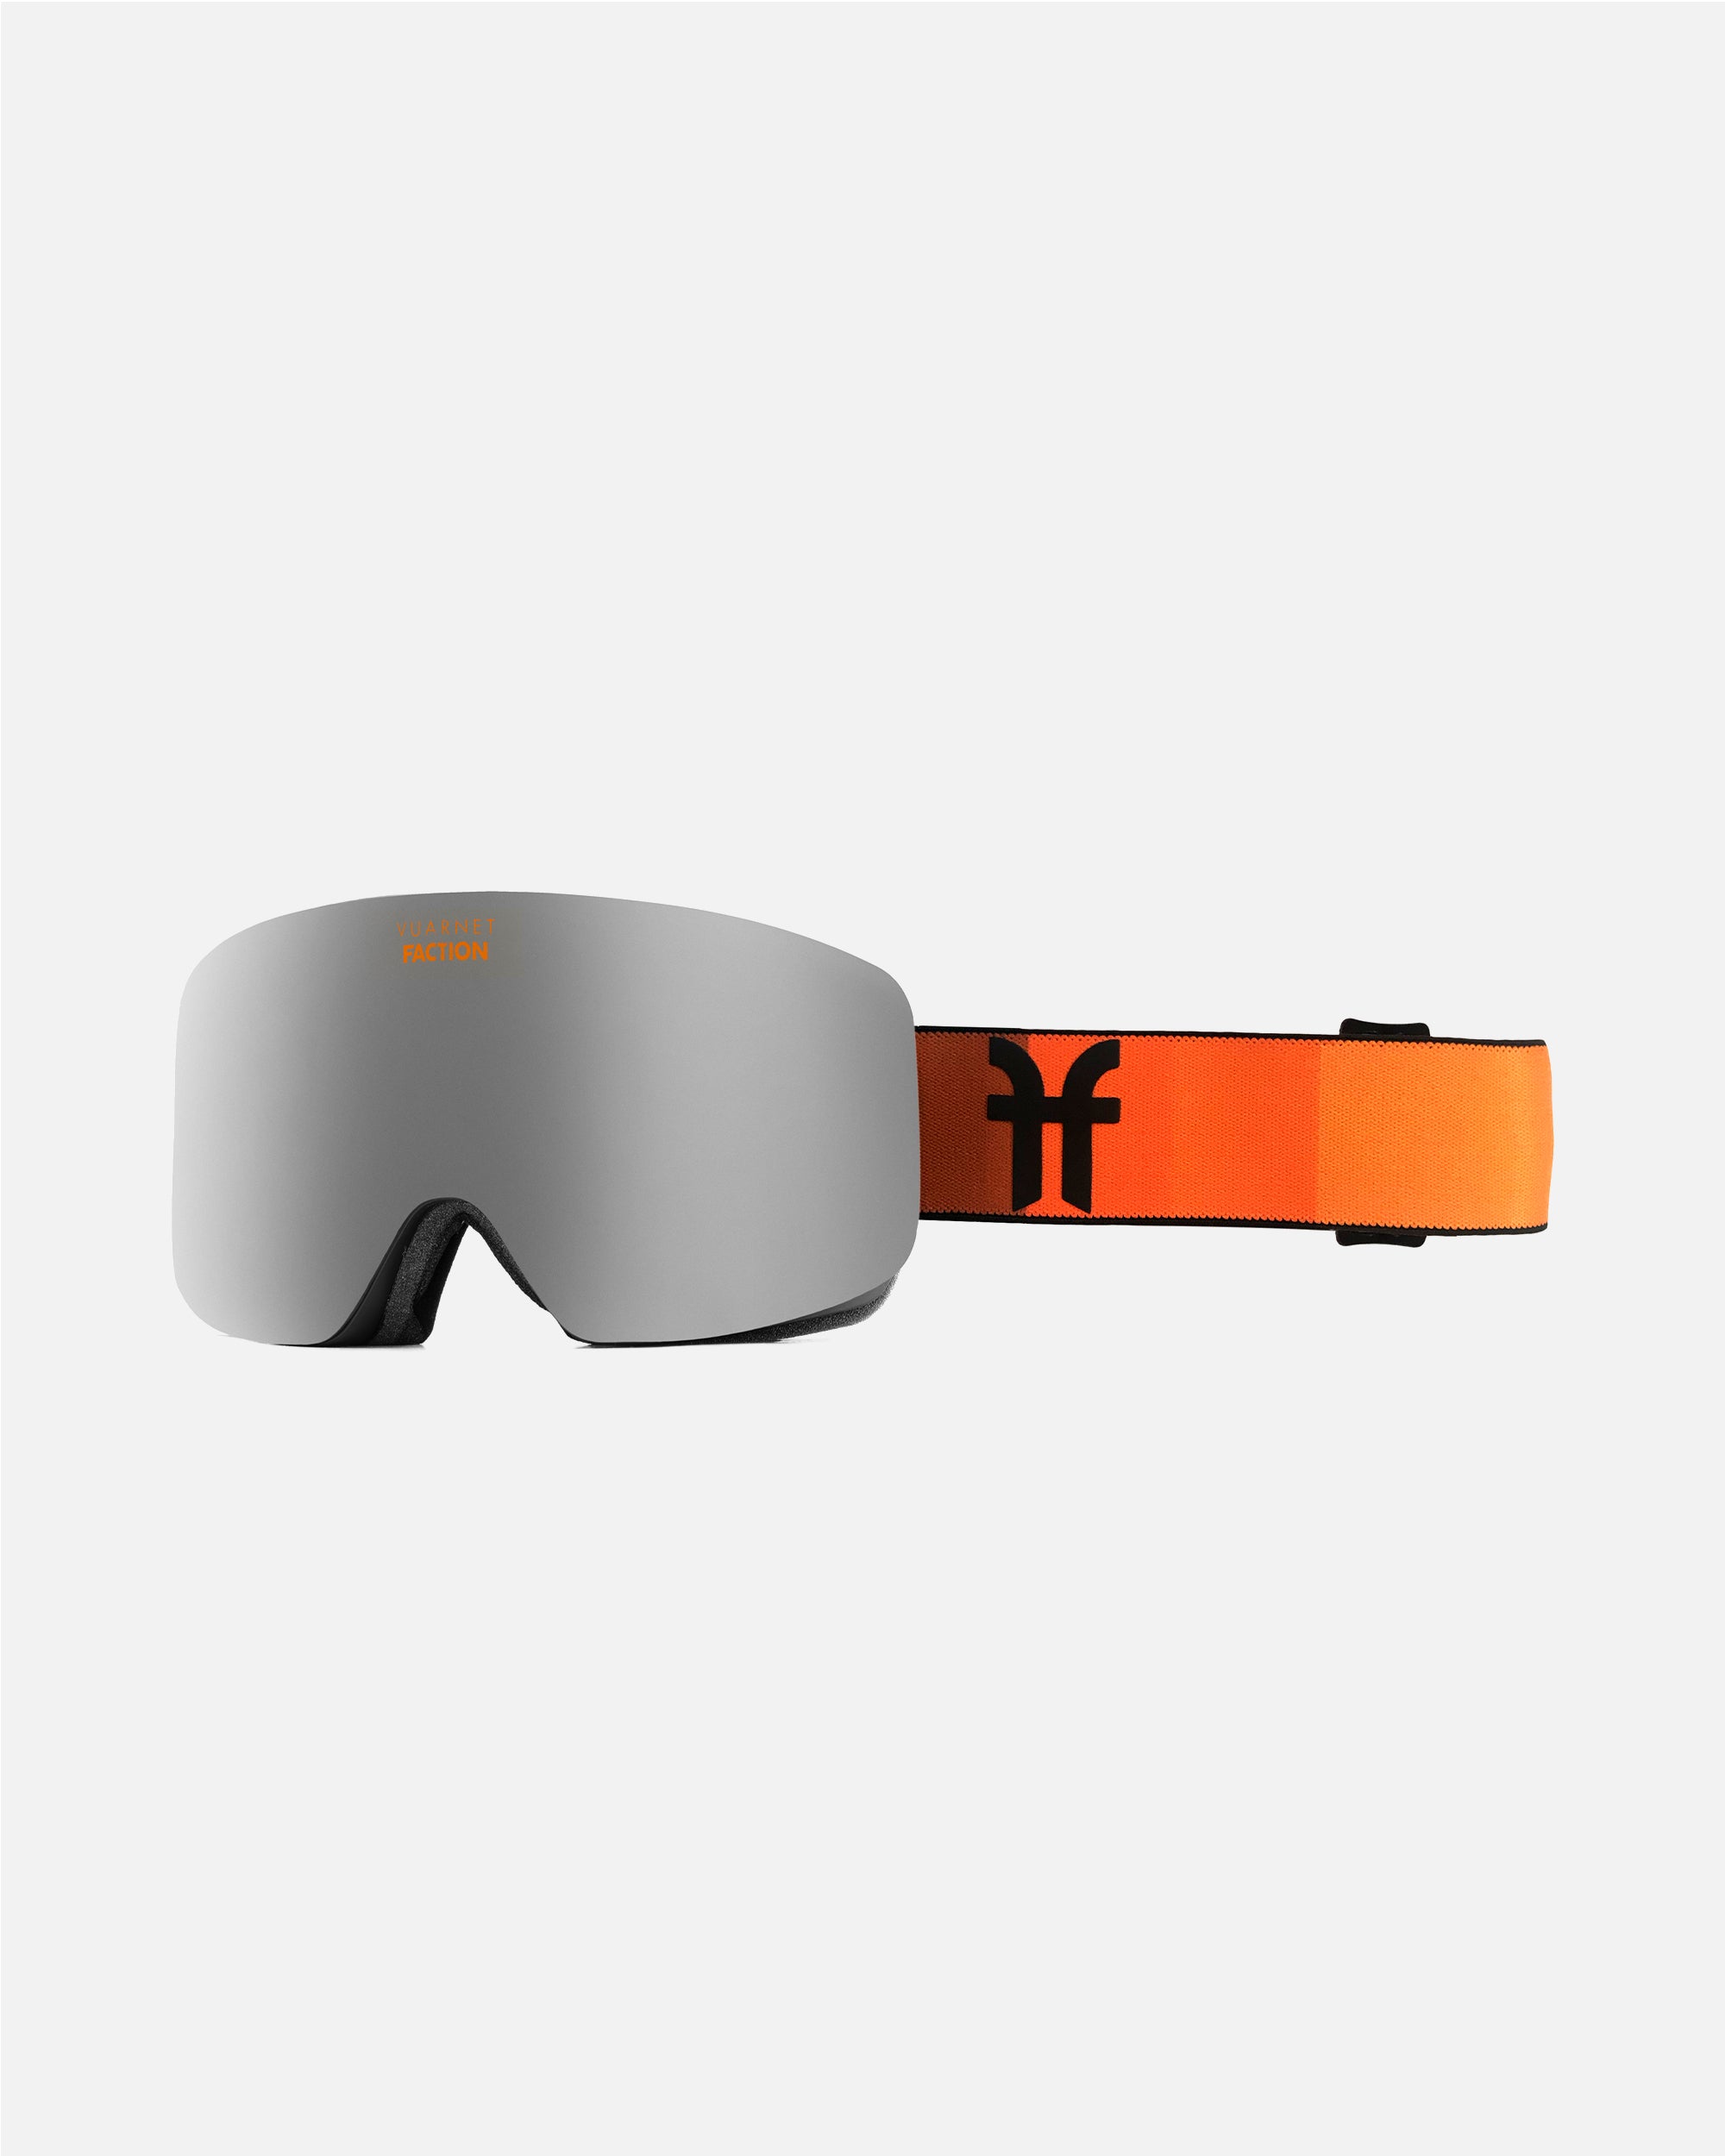 Masque De Ski Goggles